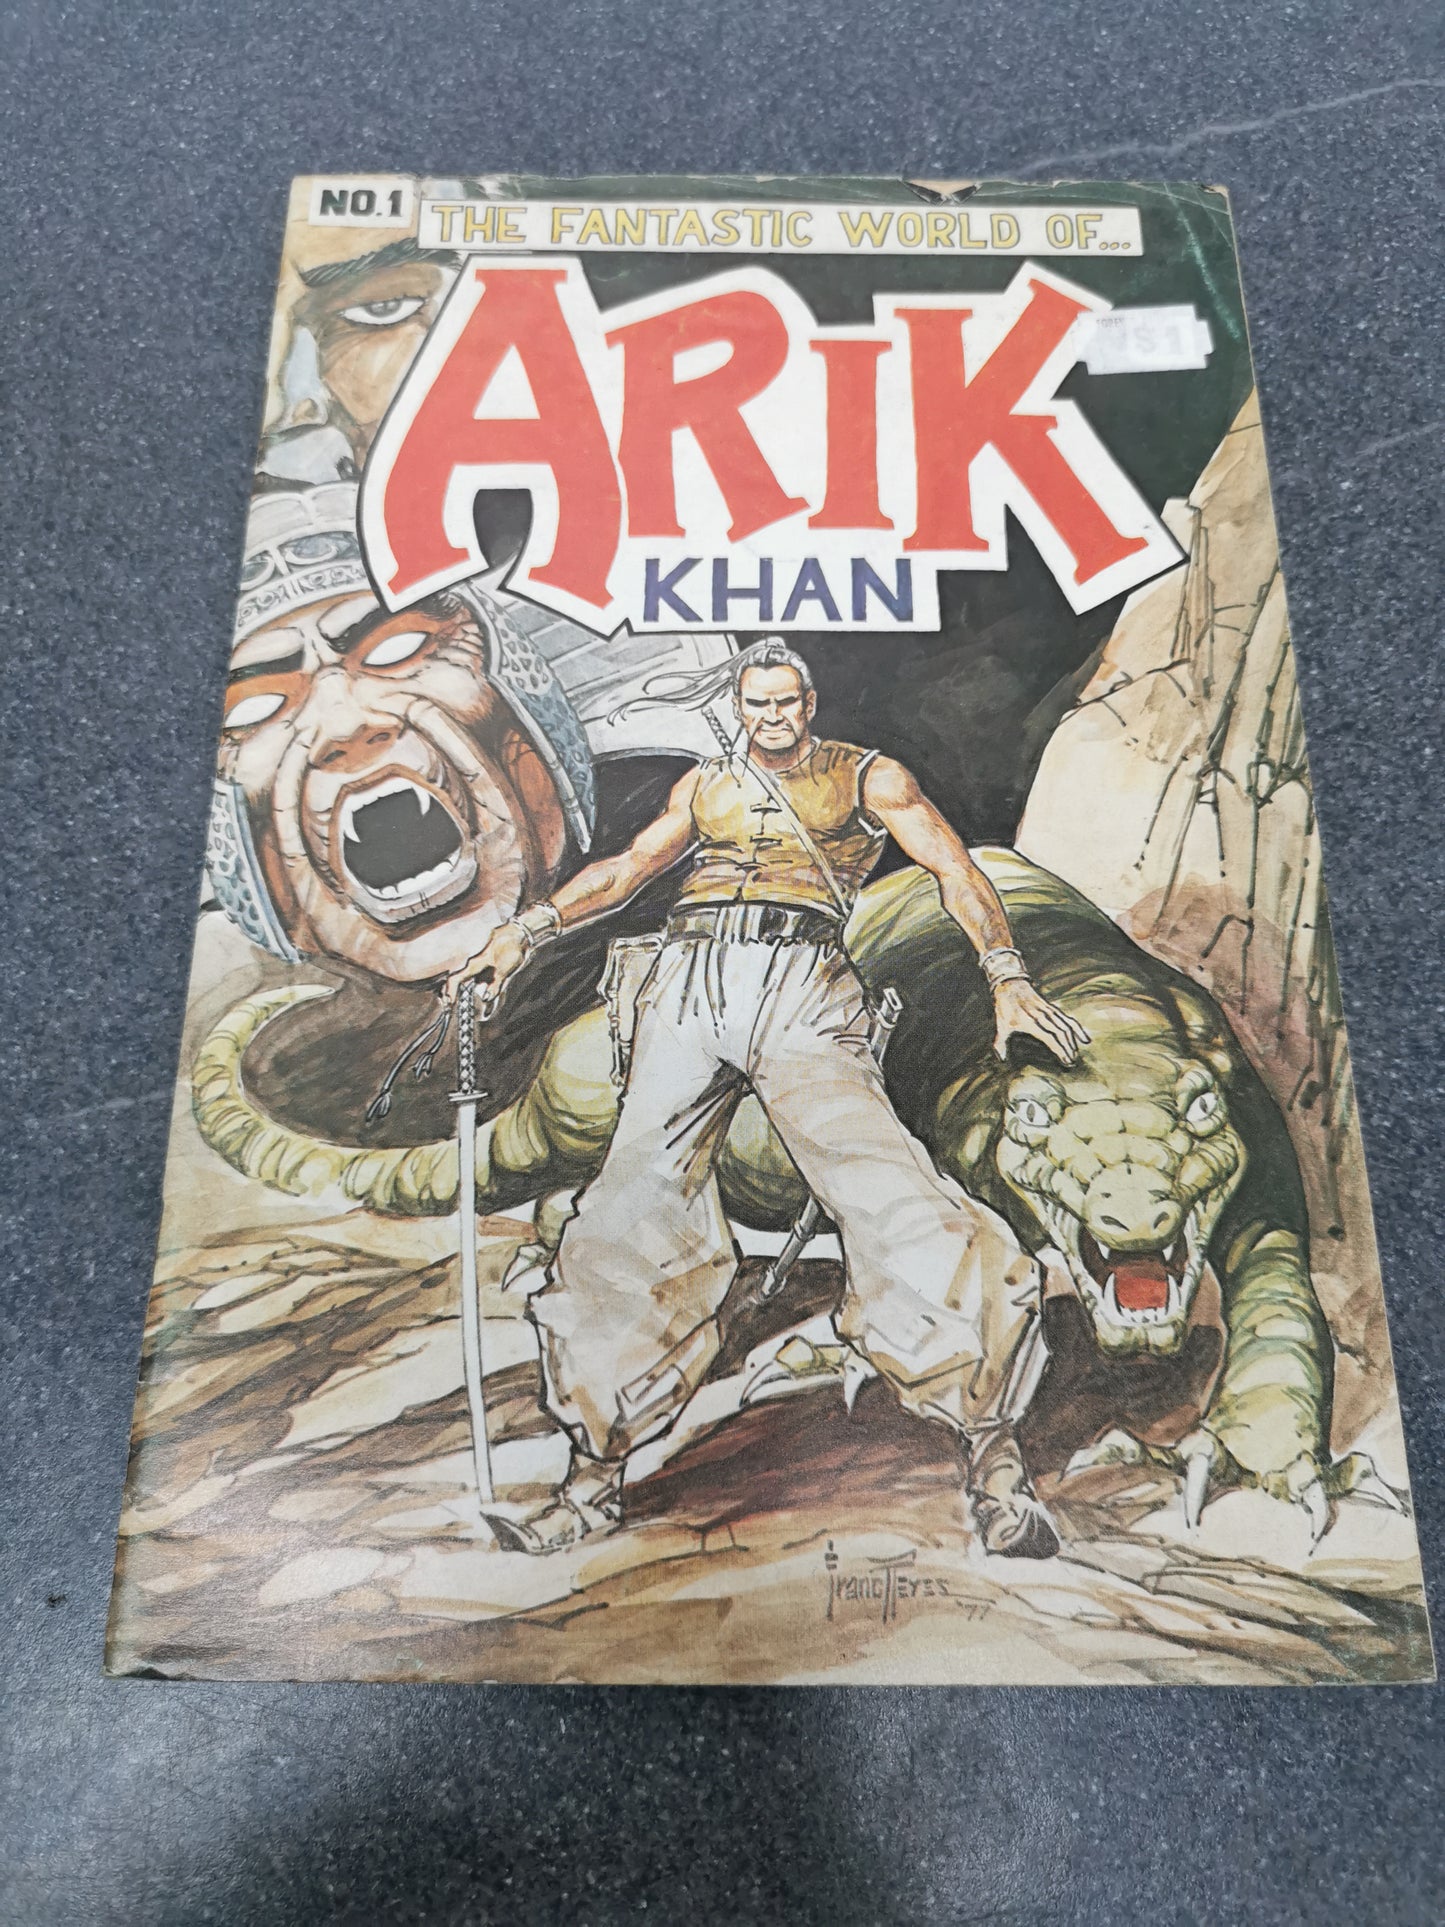 Arik Khan #1 1977 Andromeda Publications comics